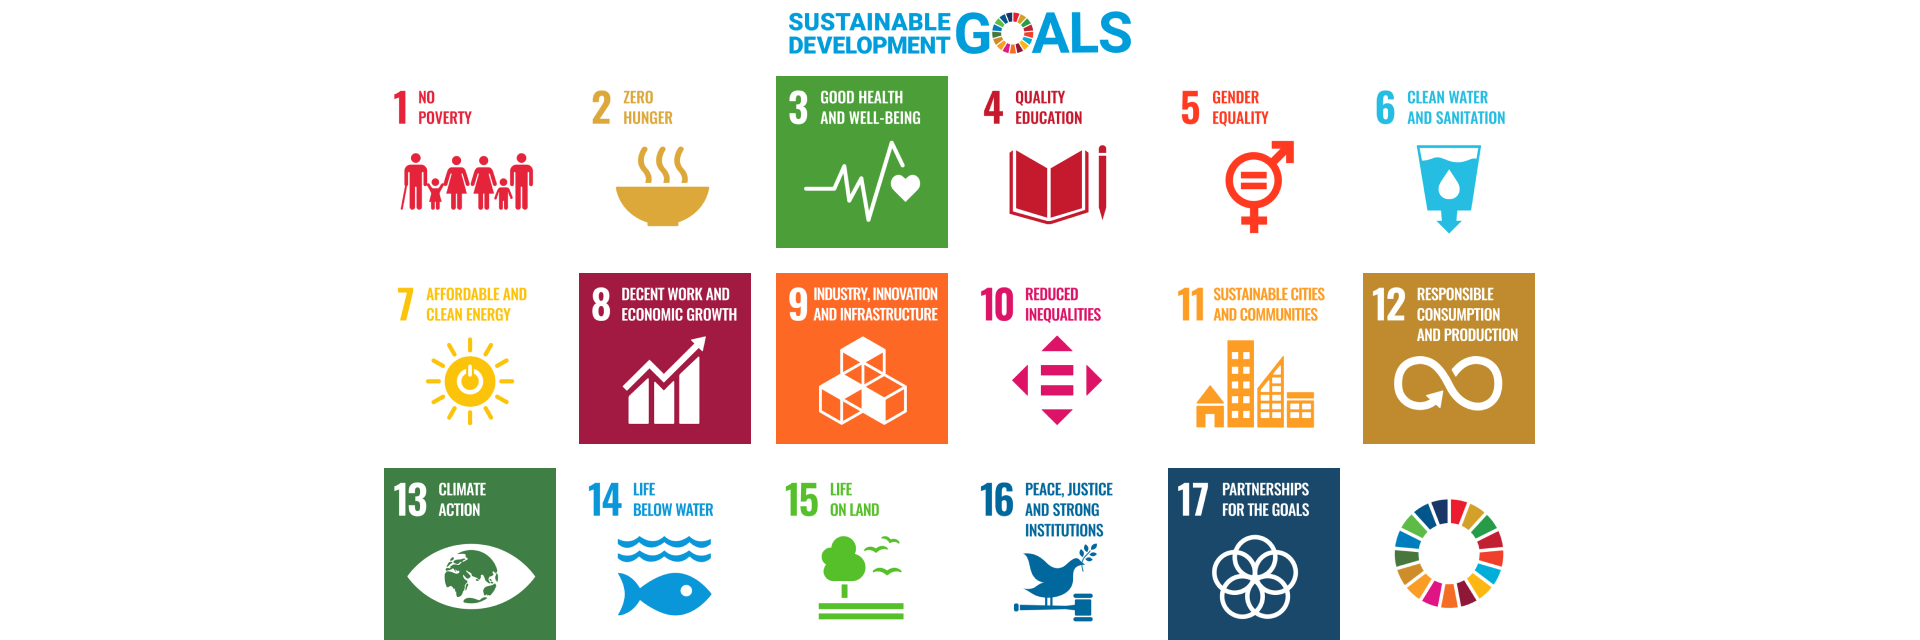 17가지 지속 가능한 개발 목표를 보여주는 그래픽